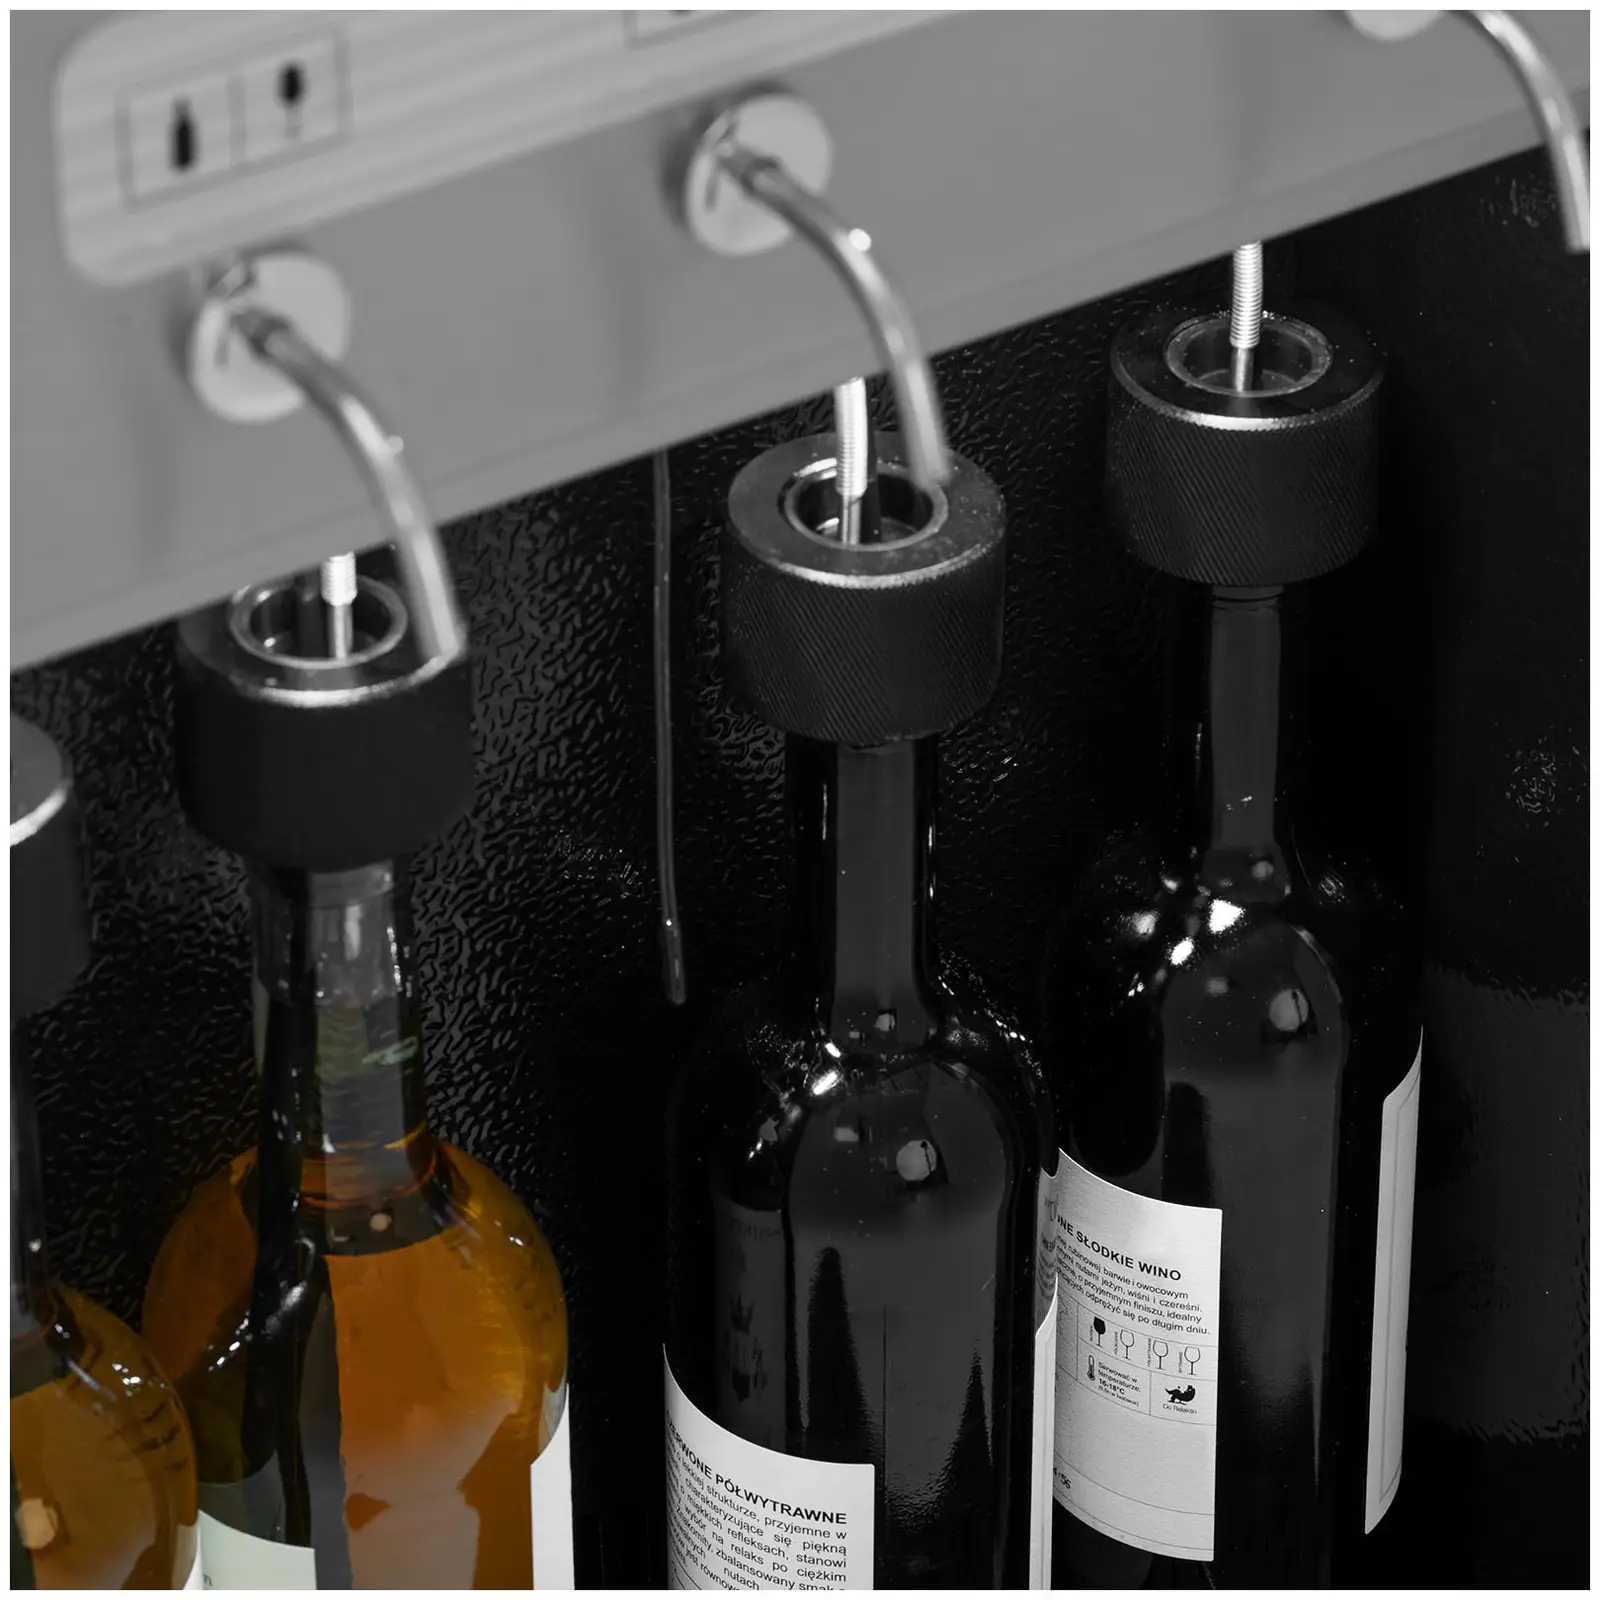 Spillatore vino professionale refrigerato - 4 bottiglie - Acciaio inox